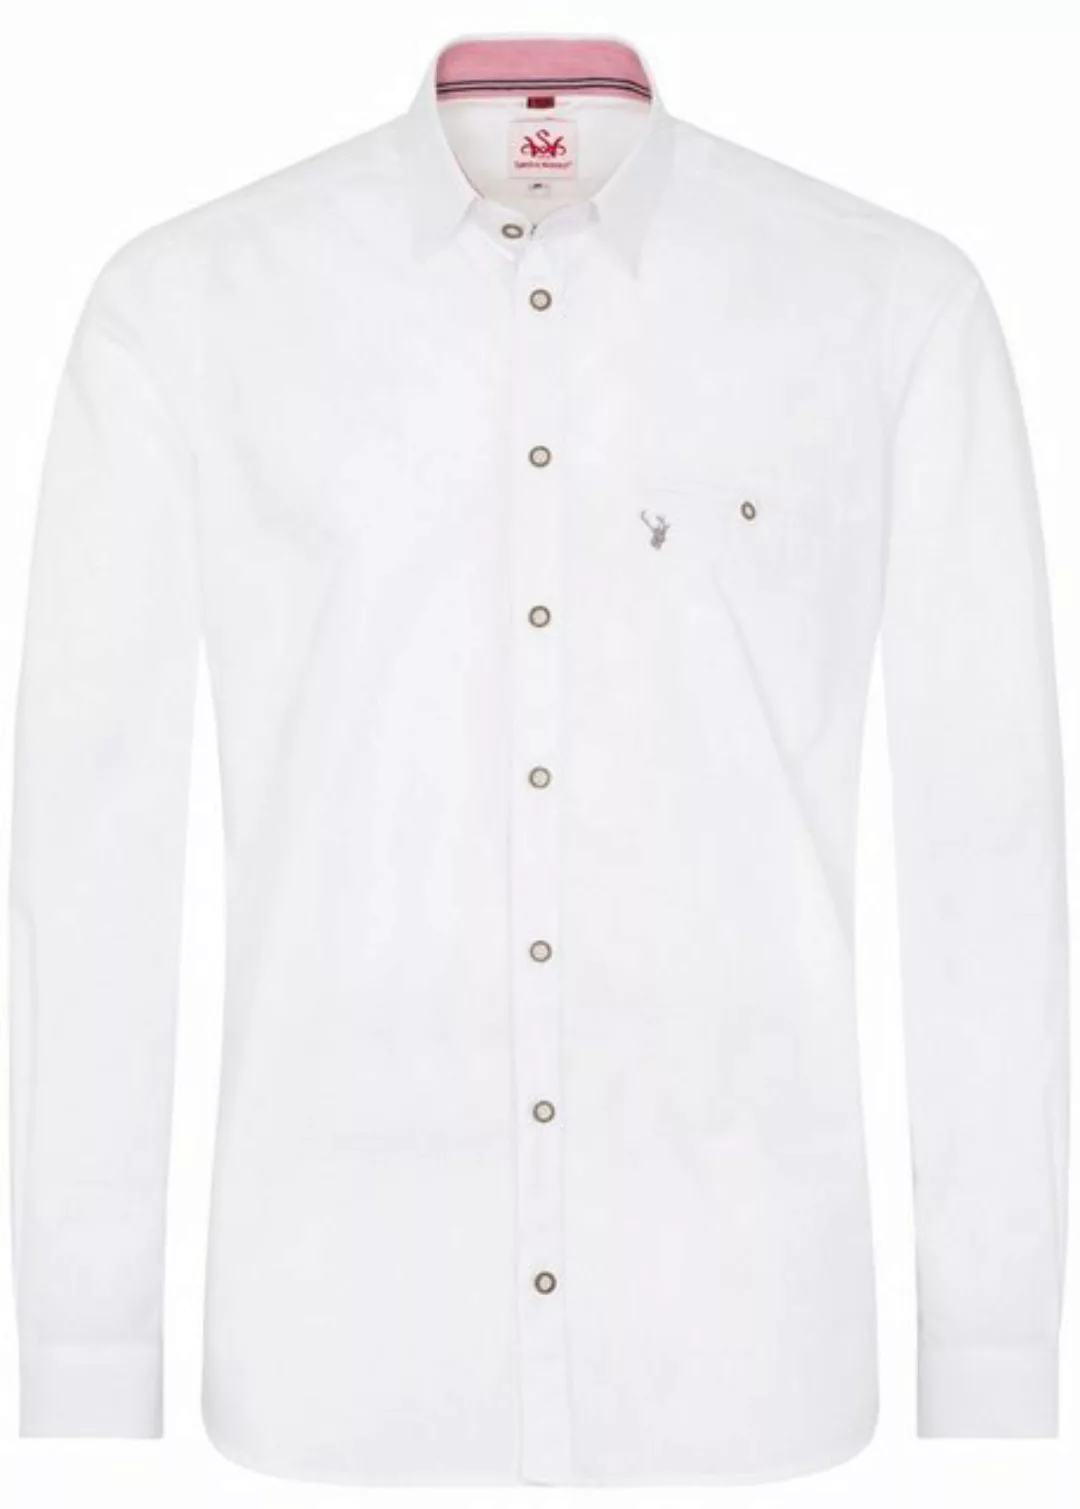 Spieth & Wensky Trachtenhemd Trachtenhemd - PERDIX - weiß/hellblau, weiß/ta günstig online kaufen